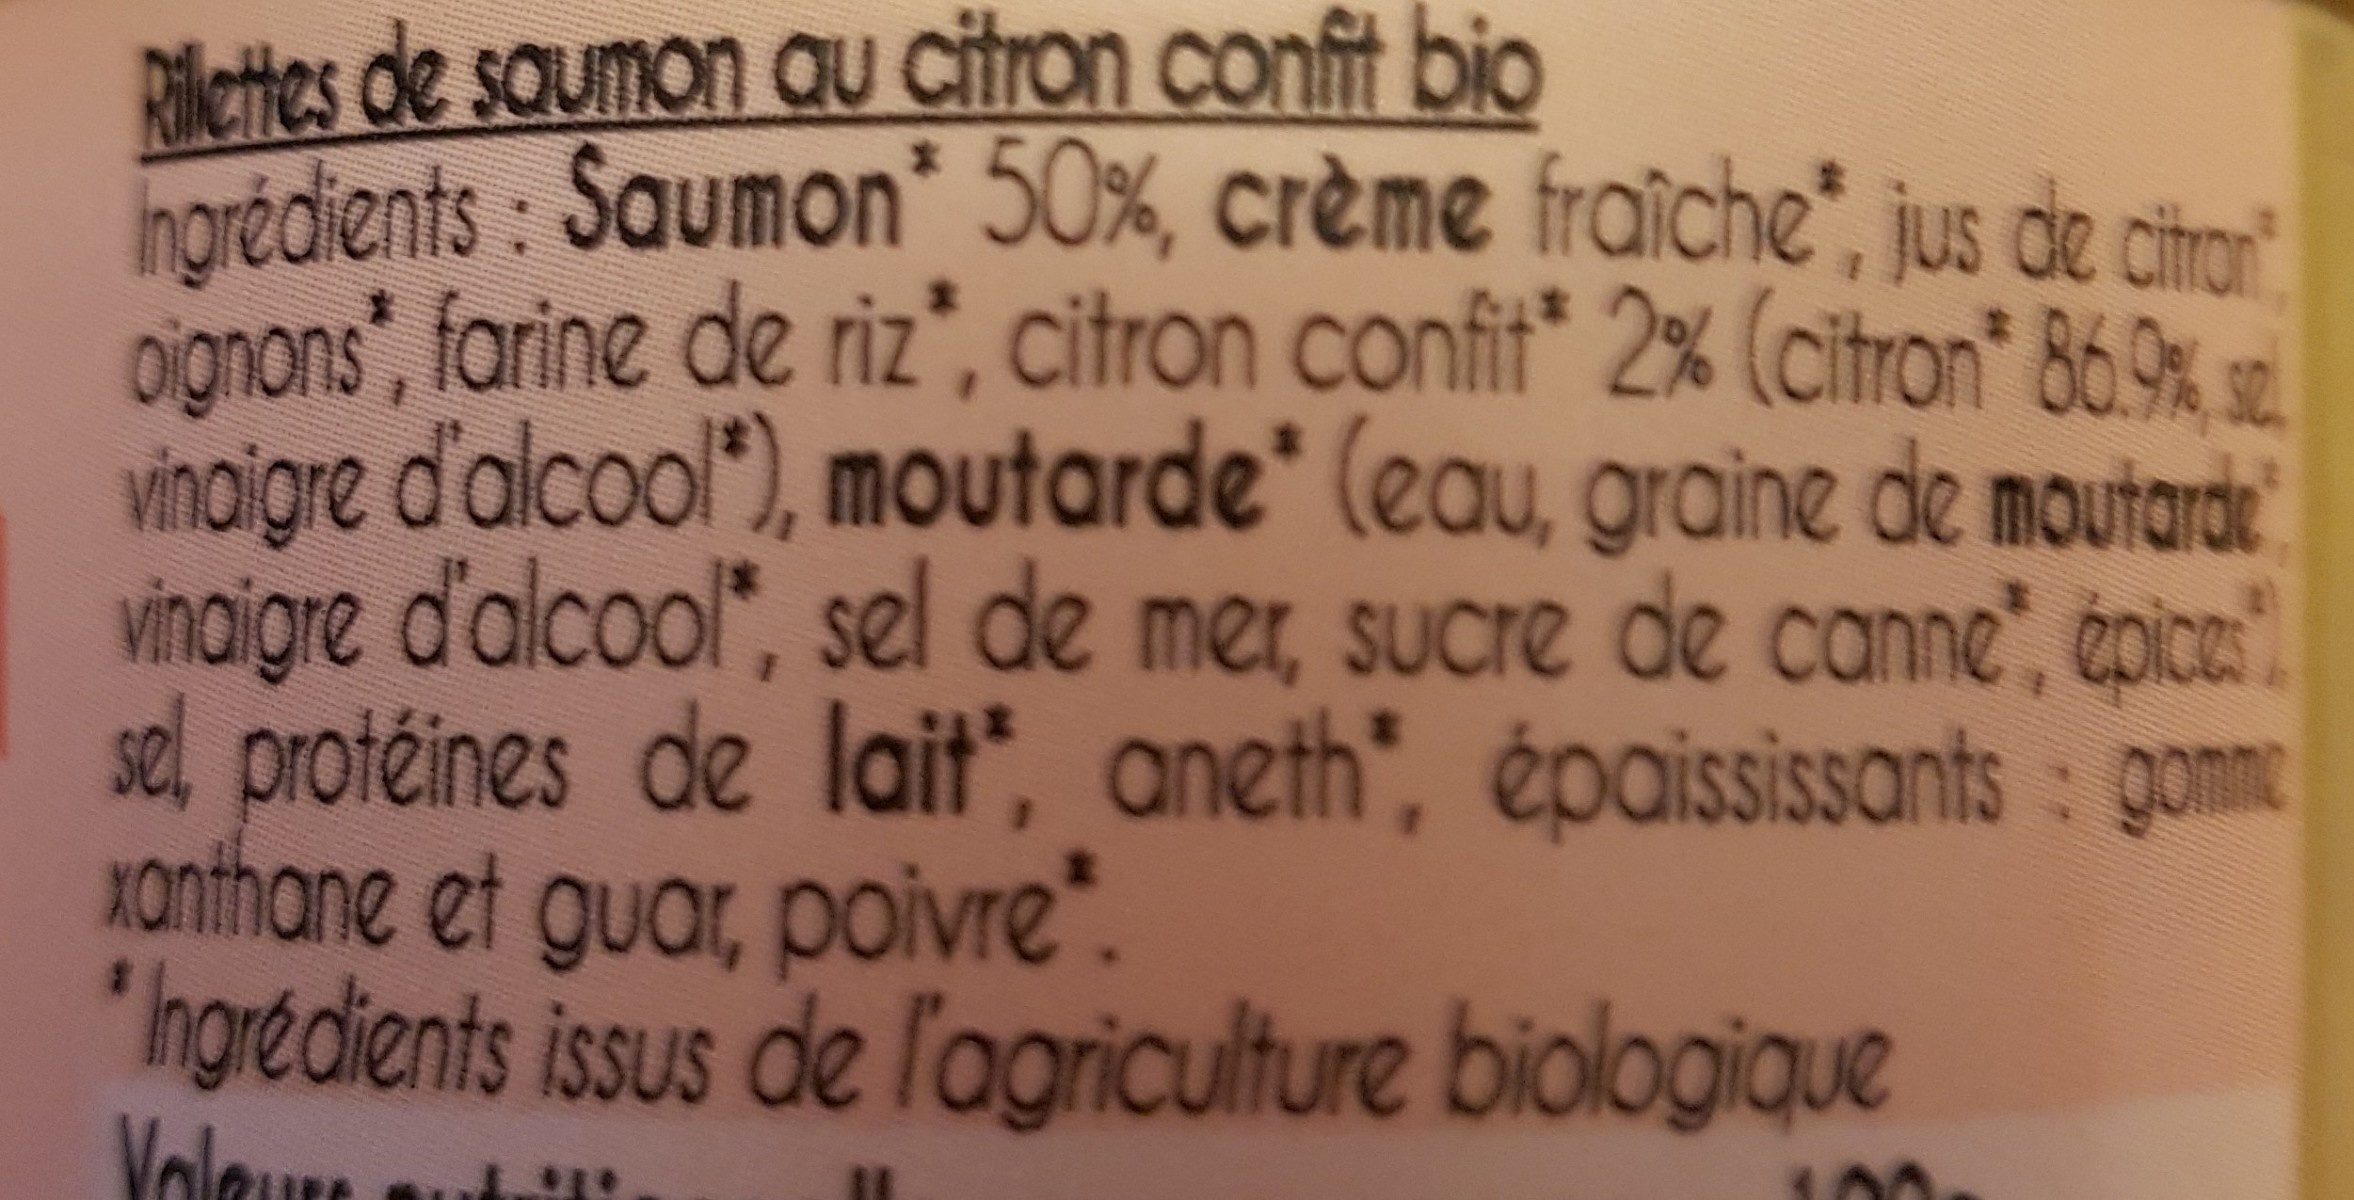 Rillettes saumon citron confit bio - Ingredients - fr